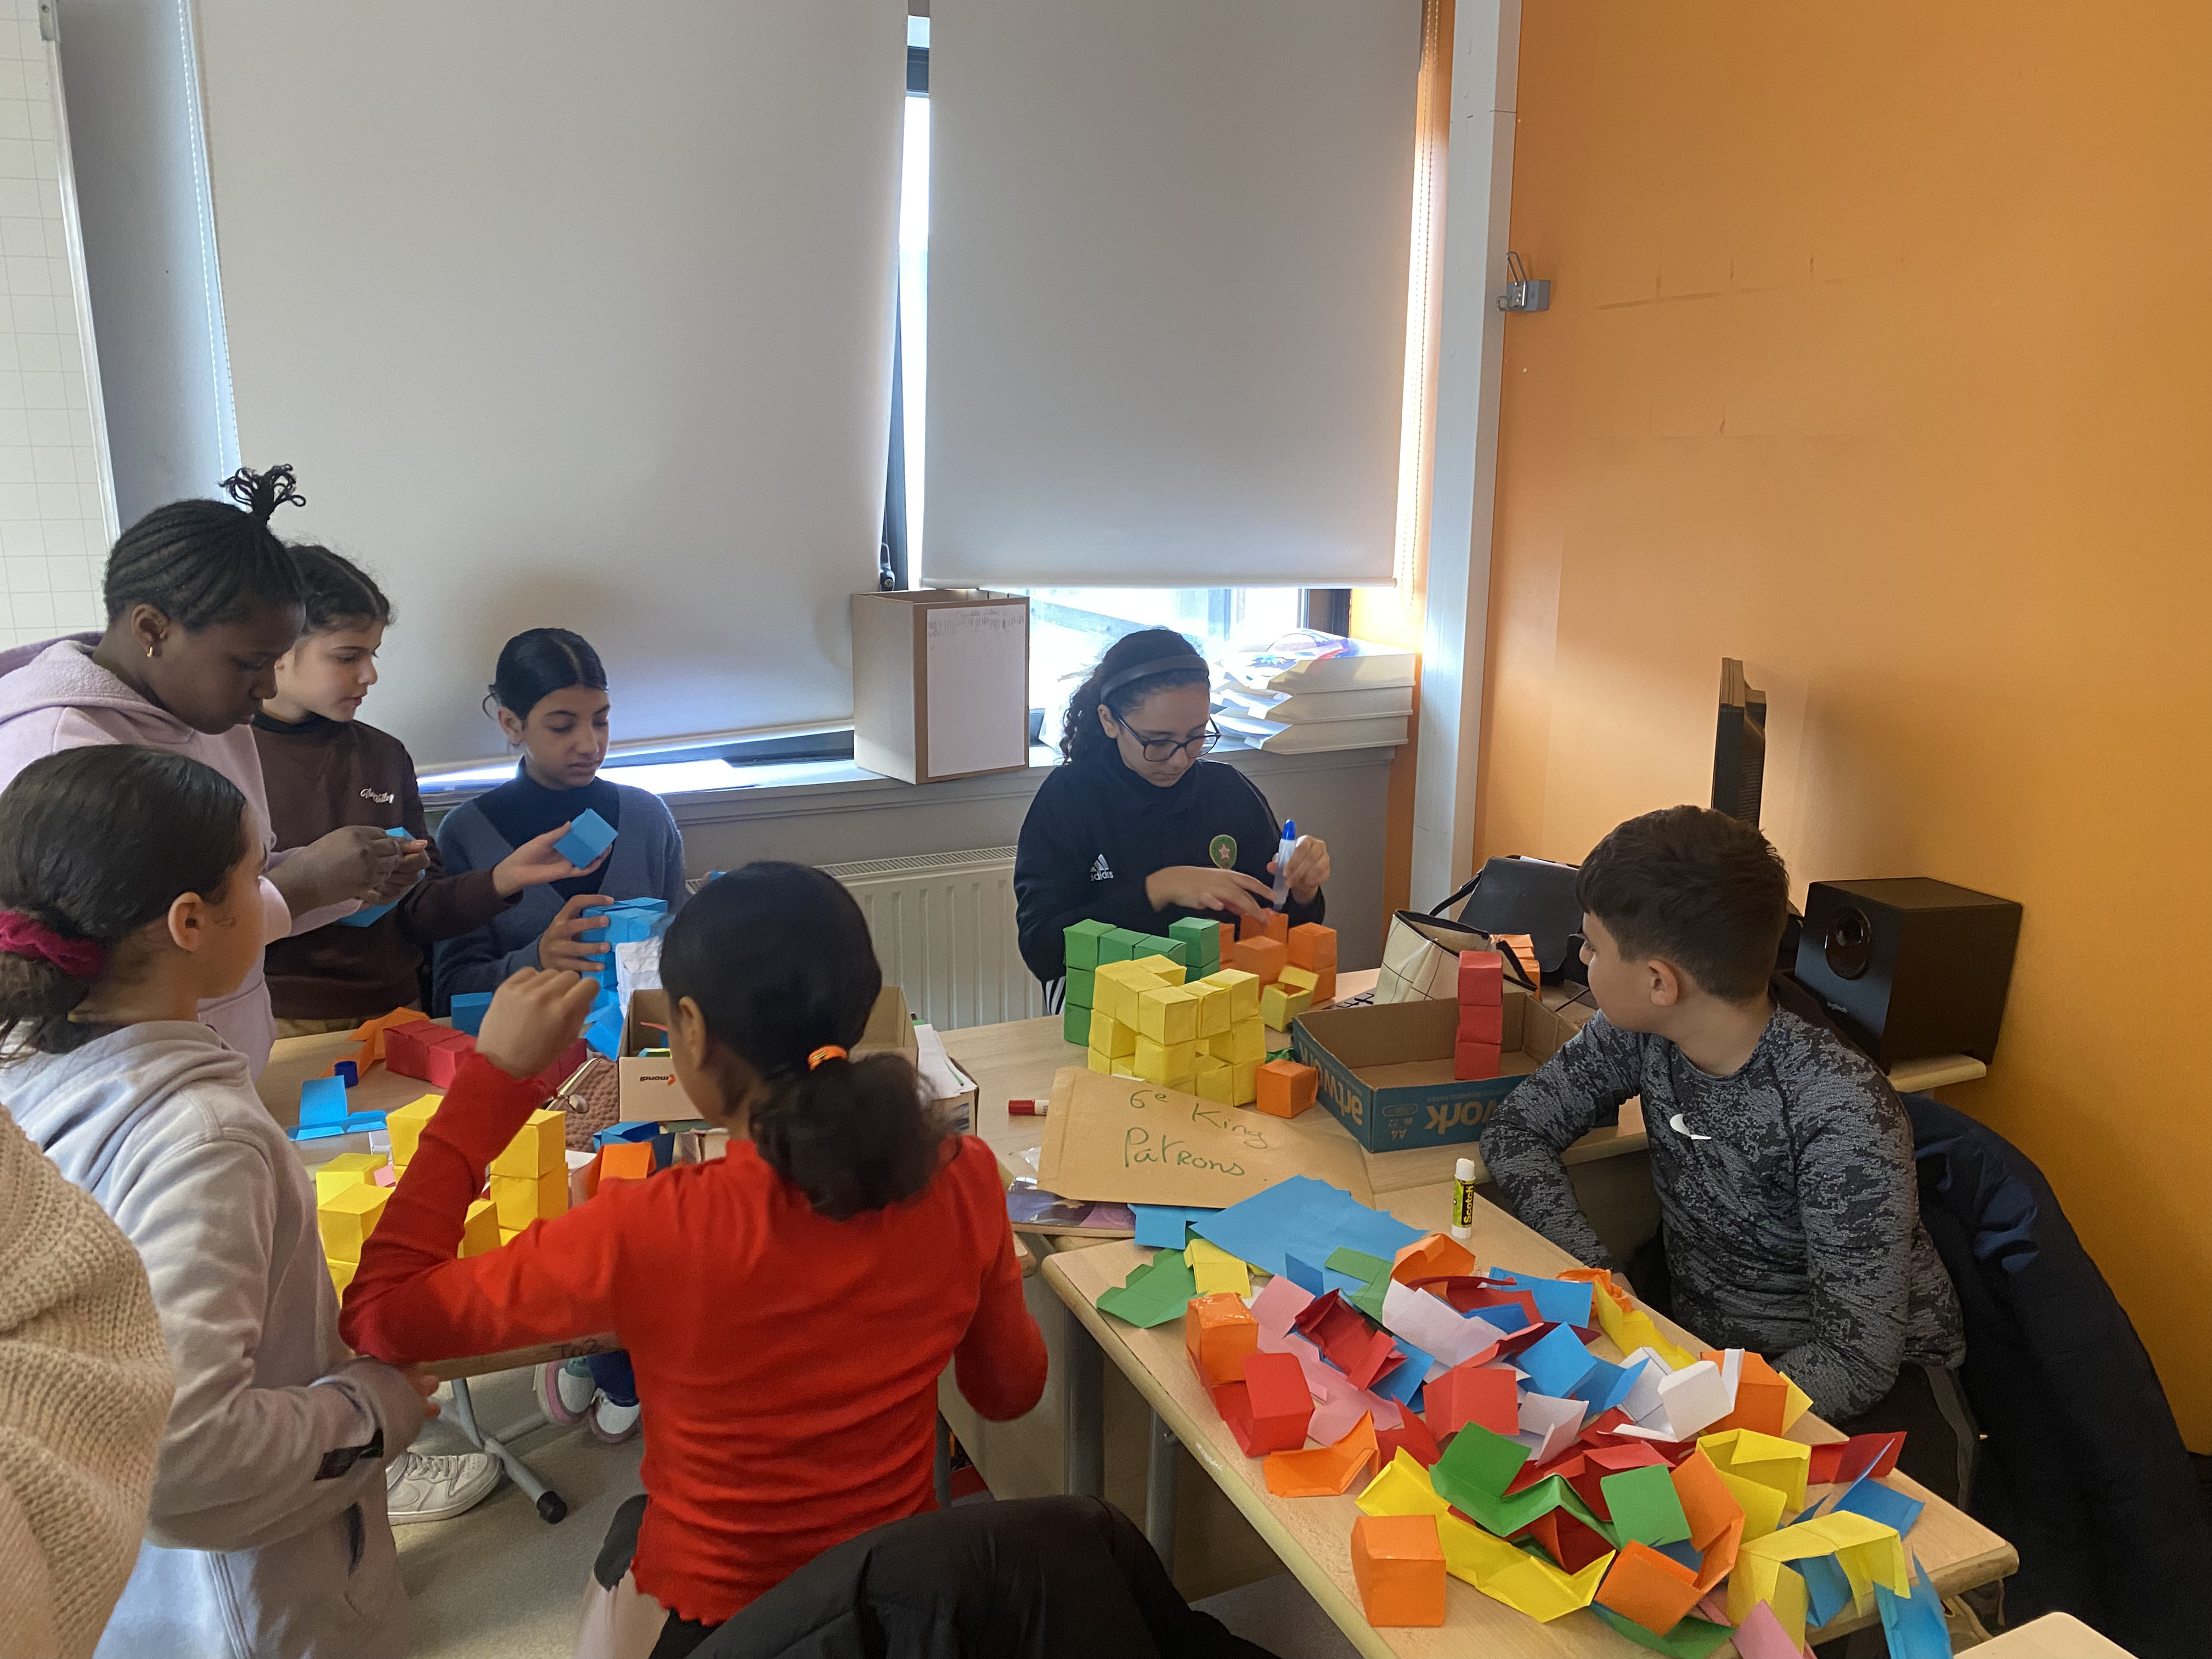 Plusieurs élèves sont réunis autour d'une table pour construire des cubes avec des feuilles de papier colorées